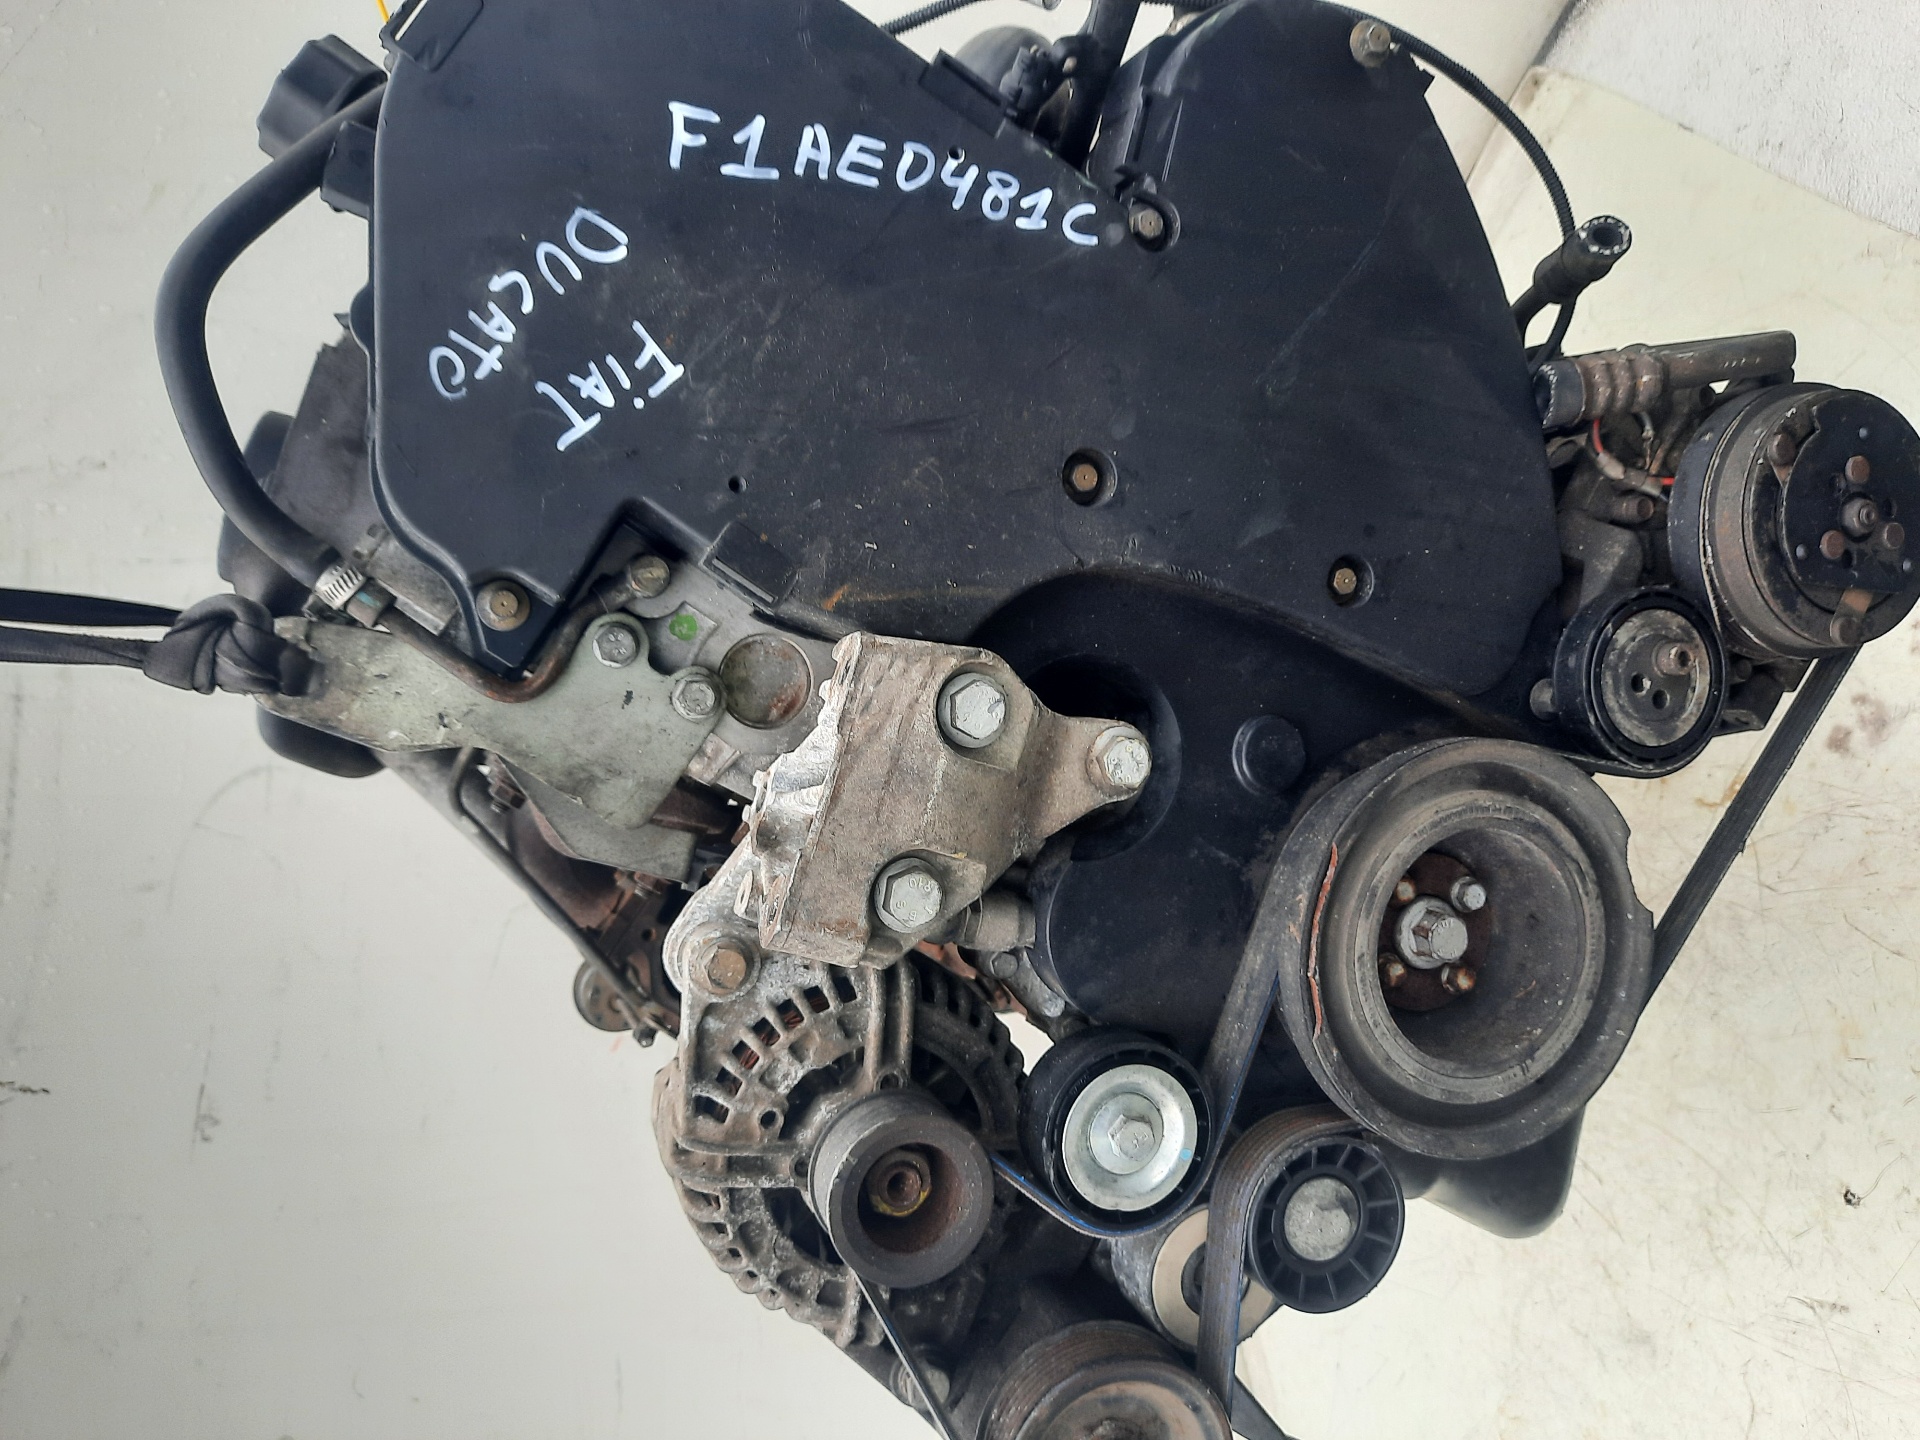 FIAT Ducato Engine F1AE0481C 23685645